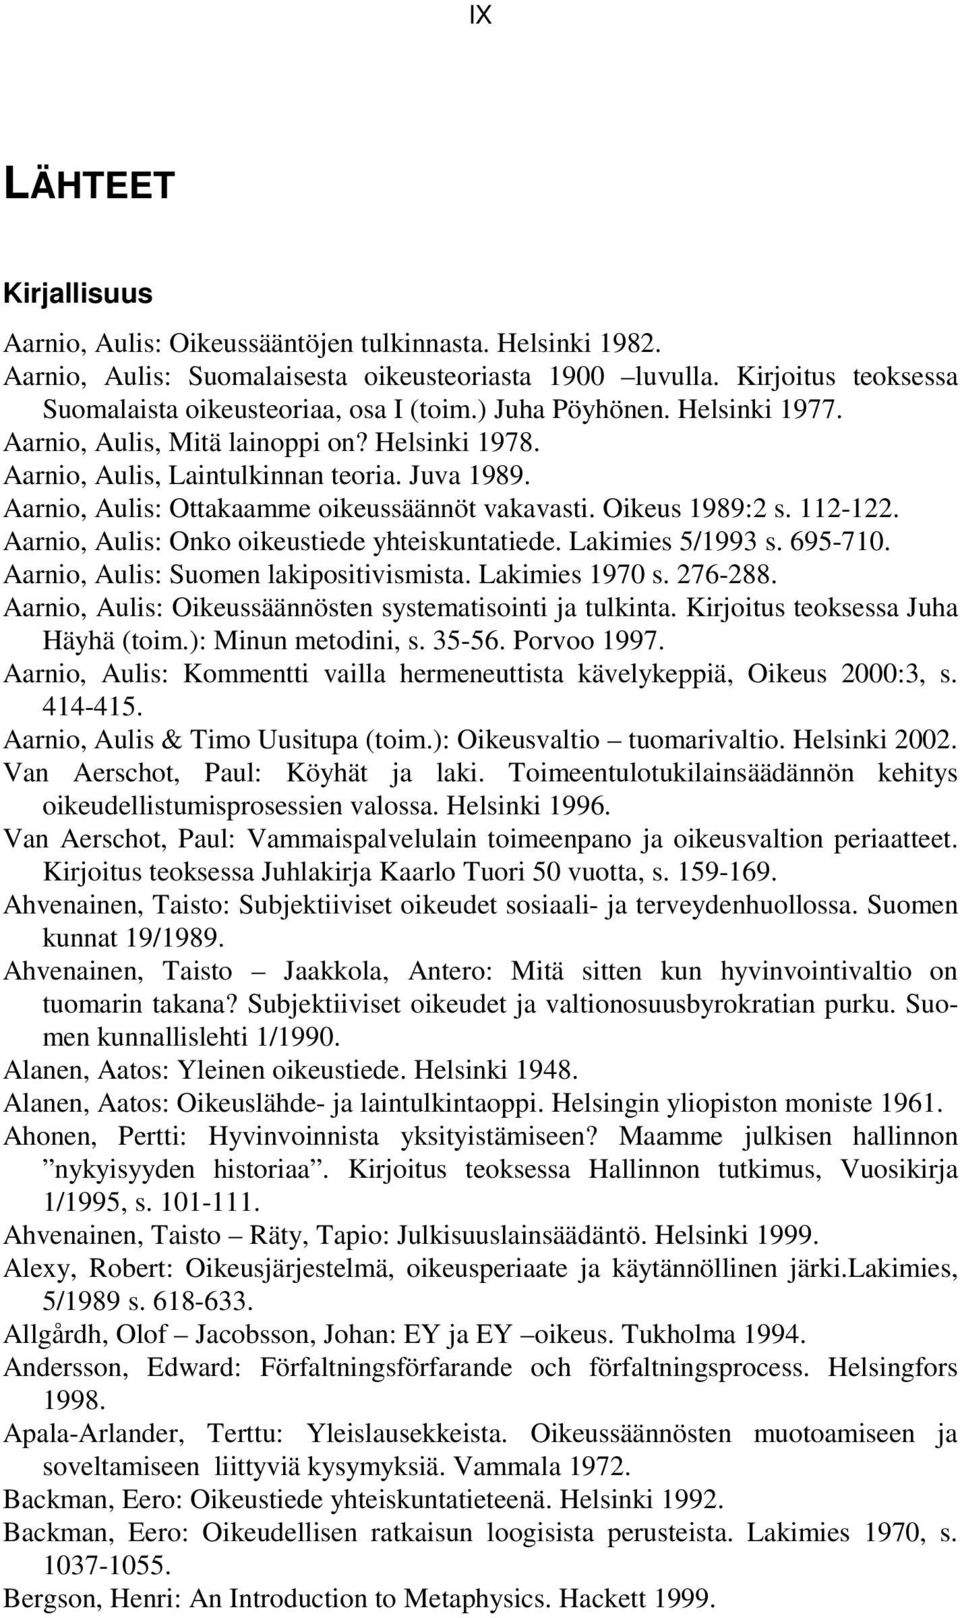 Aarnio, Aulis: Ottakaamme oikeussäännöt vakavasti. Oikeus 1989:2 s. 112-122. Aarnio, Aulis: Onko oikeustiede yhteiskuntatiede. Lakimies 5/1993 s. 695-710. Aarnio, Aulis: Suomen lakipositivismista.